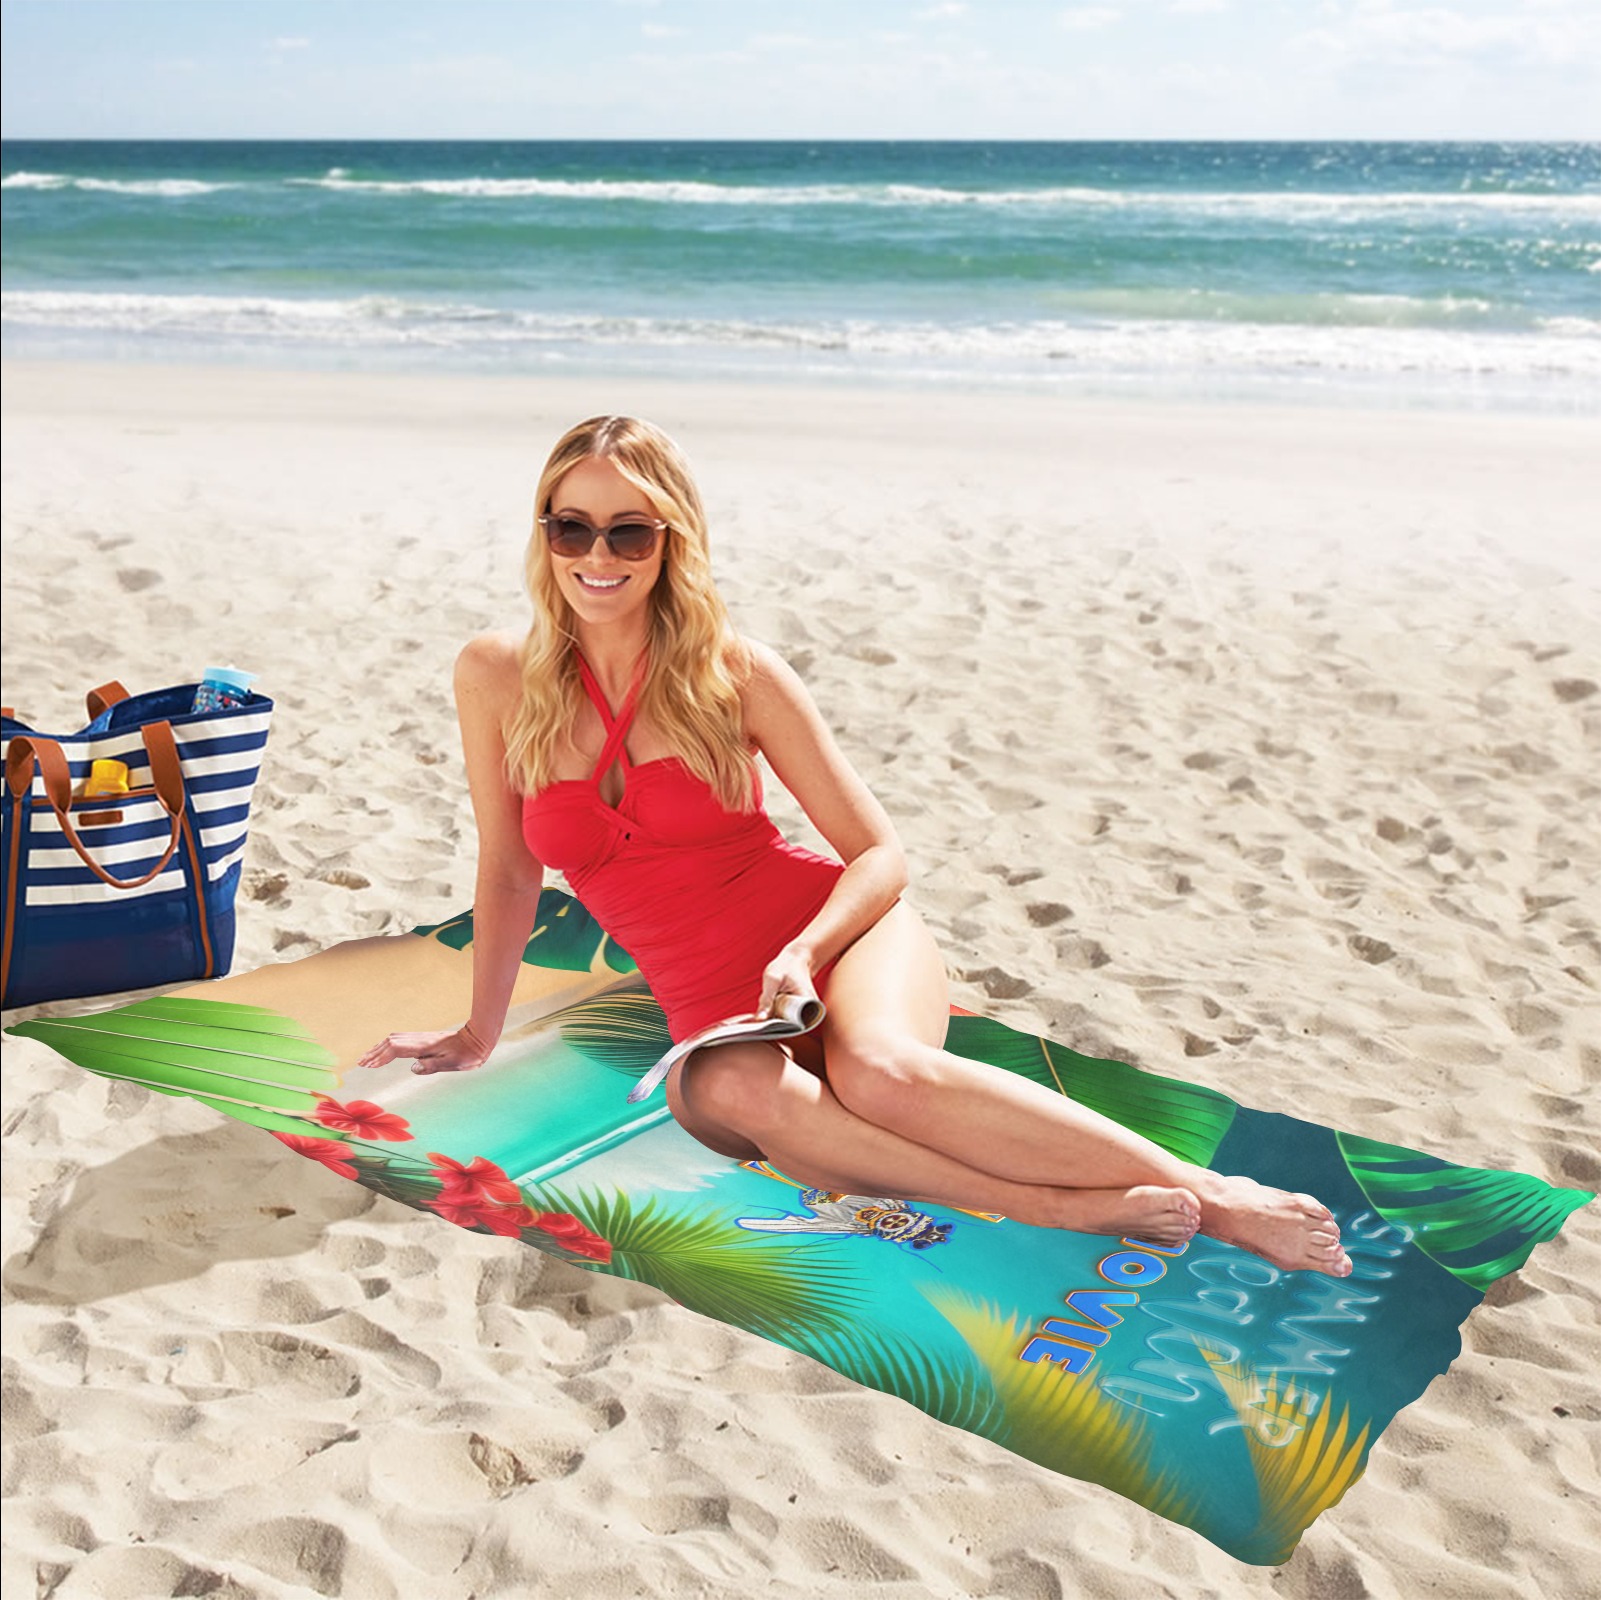 Summer Beach Movie Collectable Fly Beach Towel 32"x 71"